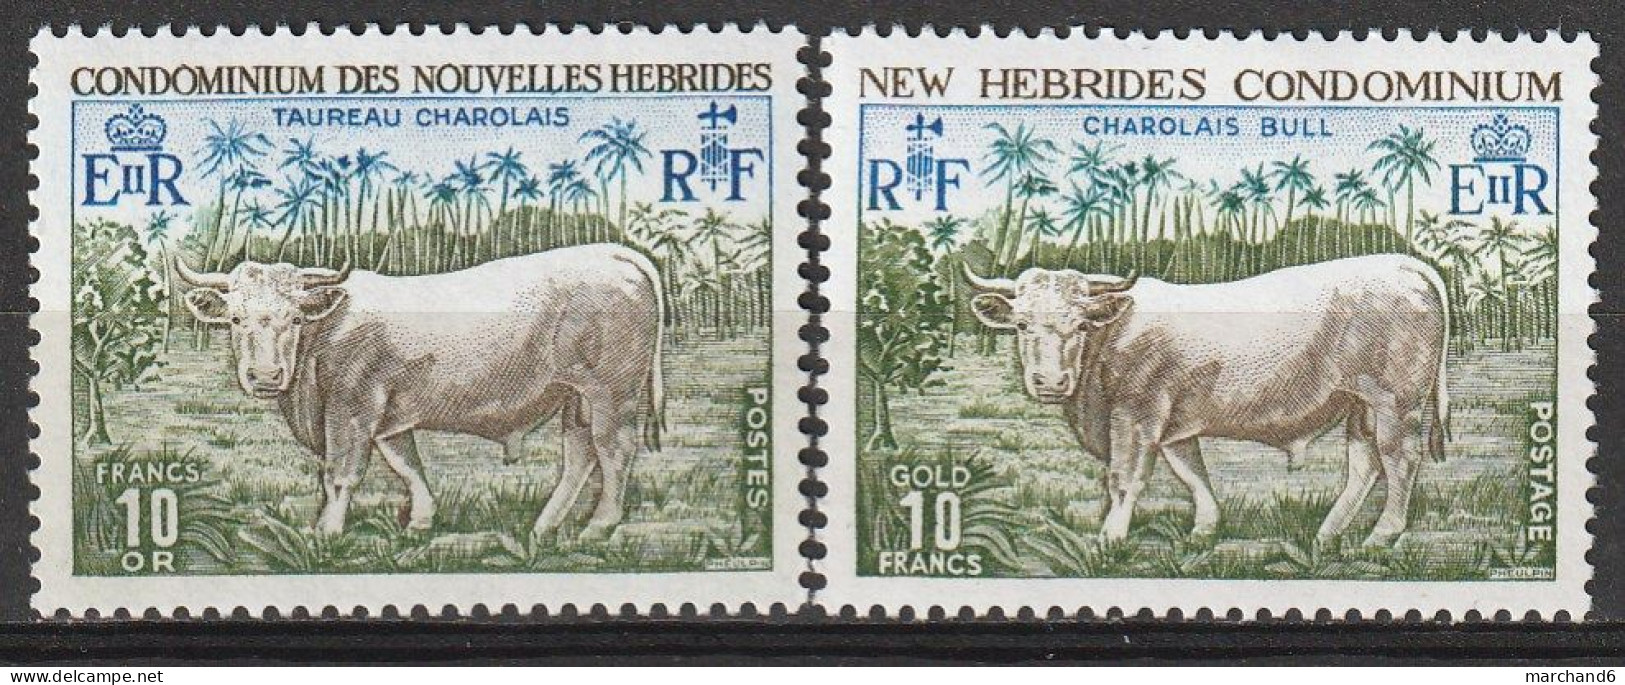 Nouvelles Hébrides Taureau Charolais 1975 France Anglaise N°408/409 Neuf** - Unused Stamps